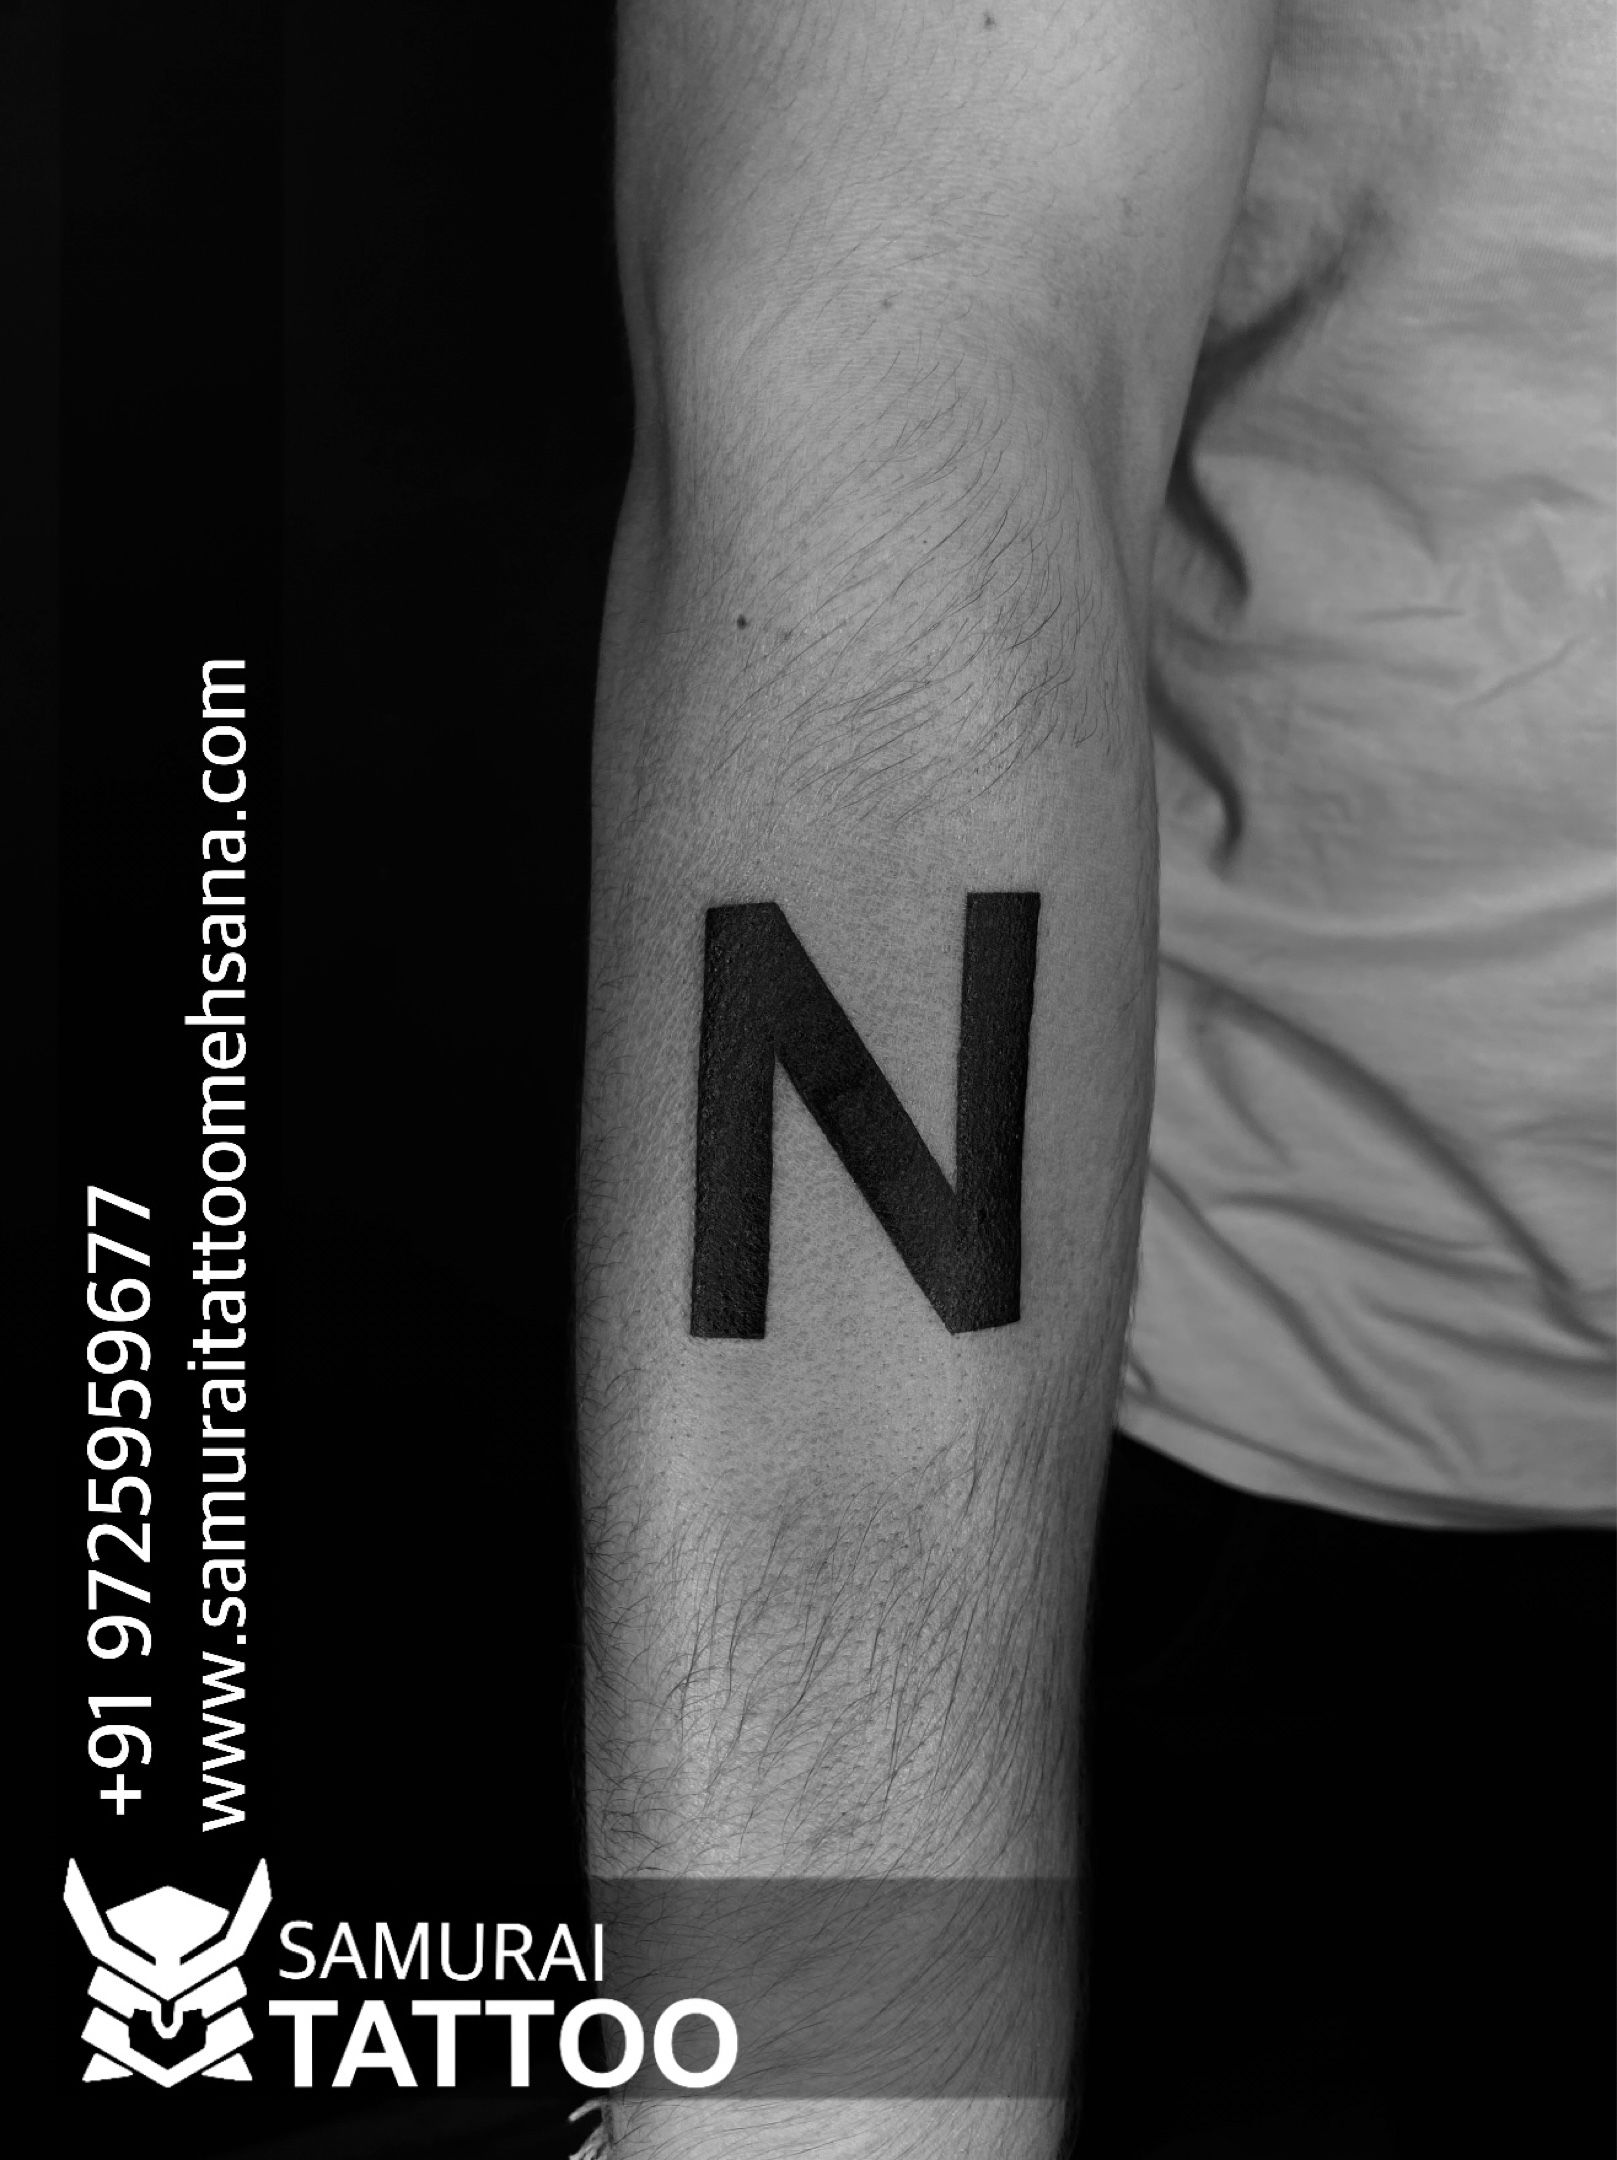 Vd tattoo |Vd logo tatatoo |Vd font tattoo |Vd tattoo design | Tattoo  fonts, Tattoo designs, Tattoo font